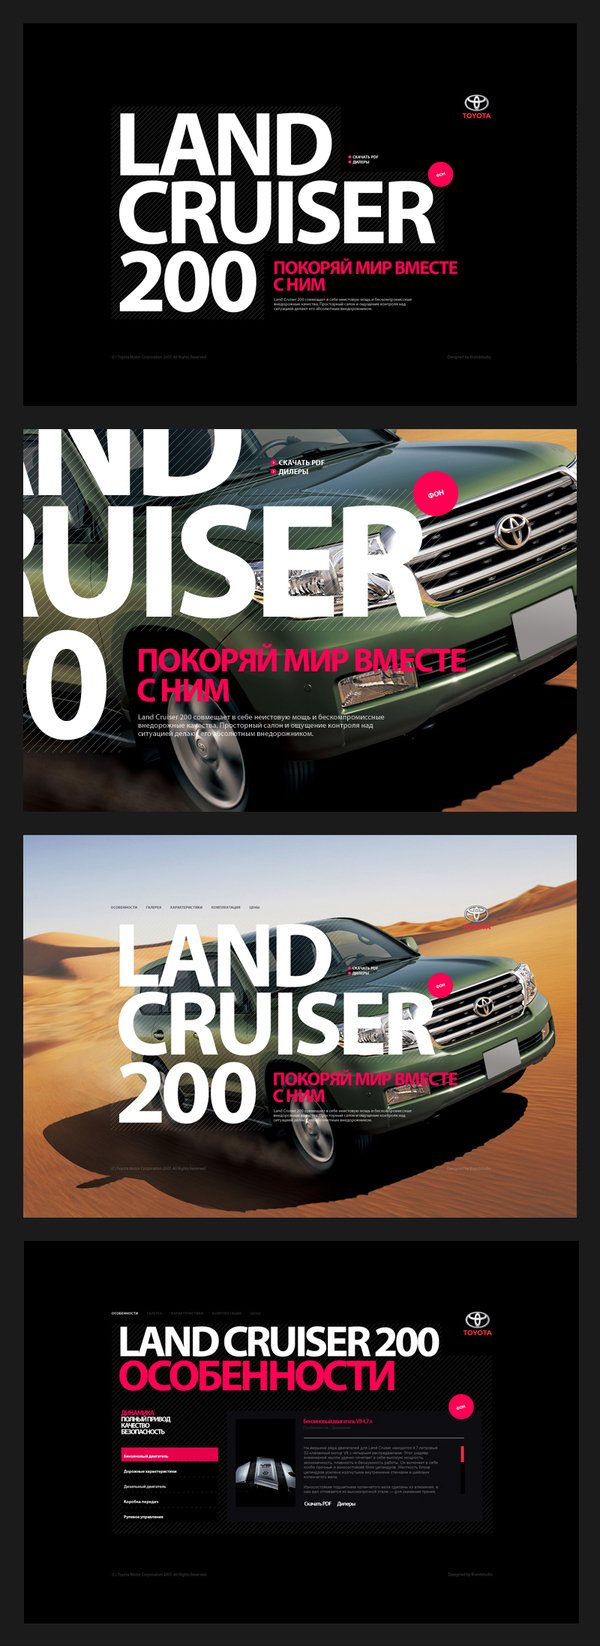 丰田LAND CRUISER 200汽车网页设计